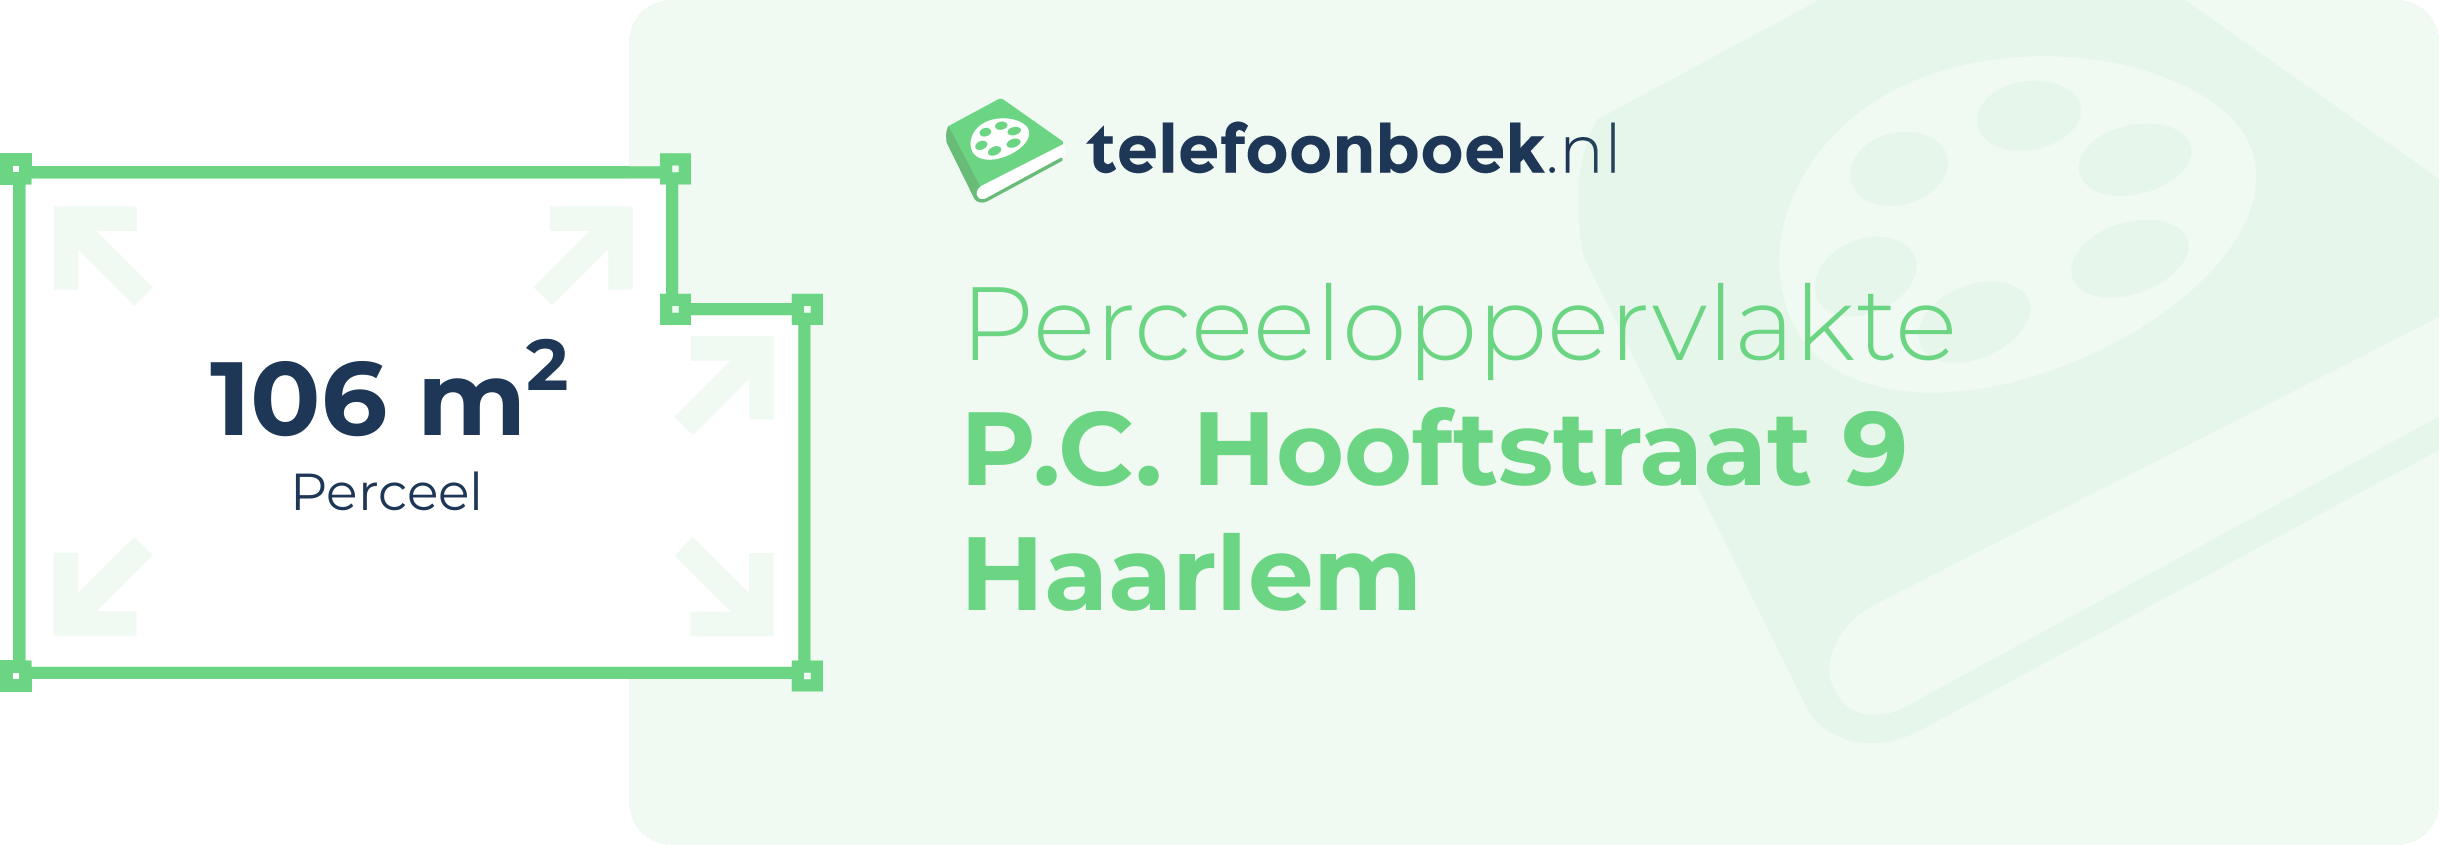 Perceeloppervlakte P.C. Hooftstraat 9 Haarlem